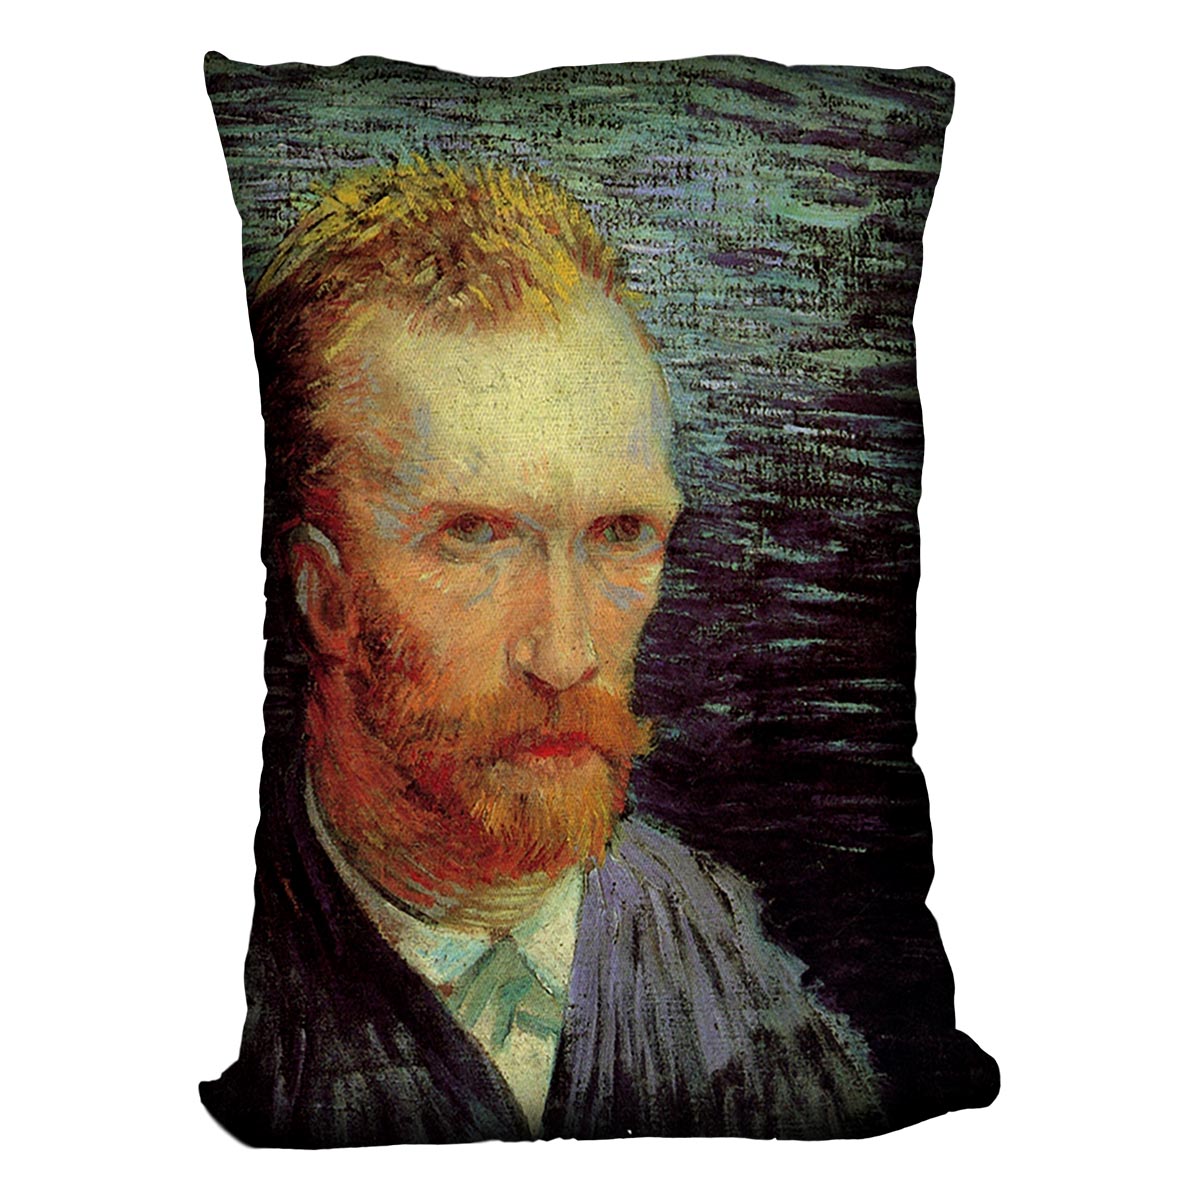 Self-Portrait 7 by Van Gogh Cushion